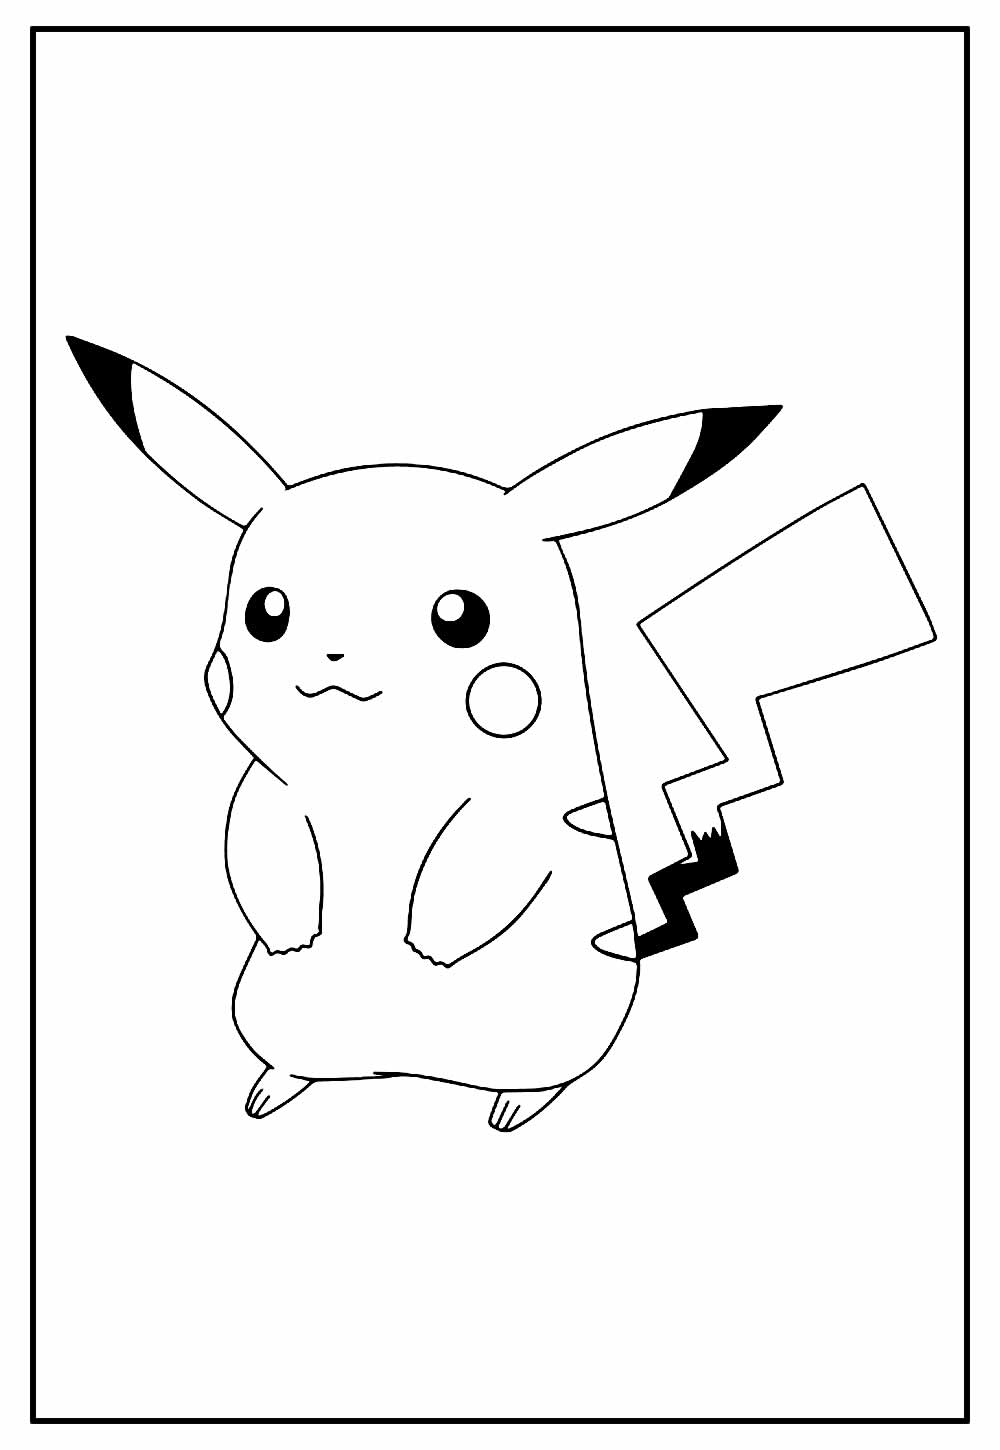 Desenho de Pikachu para colorir e pintar